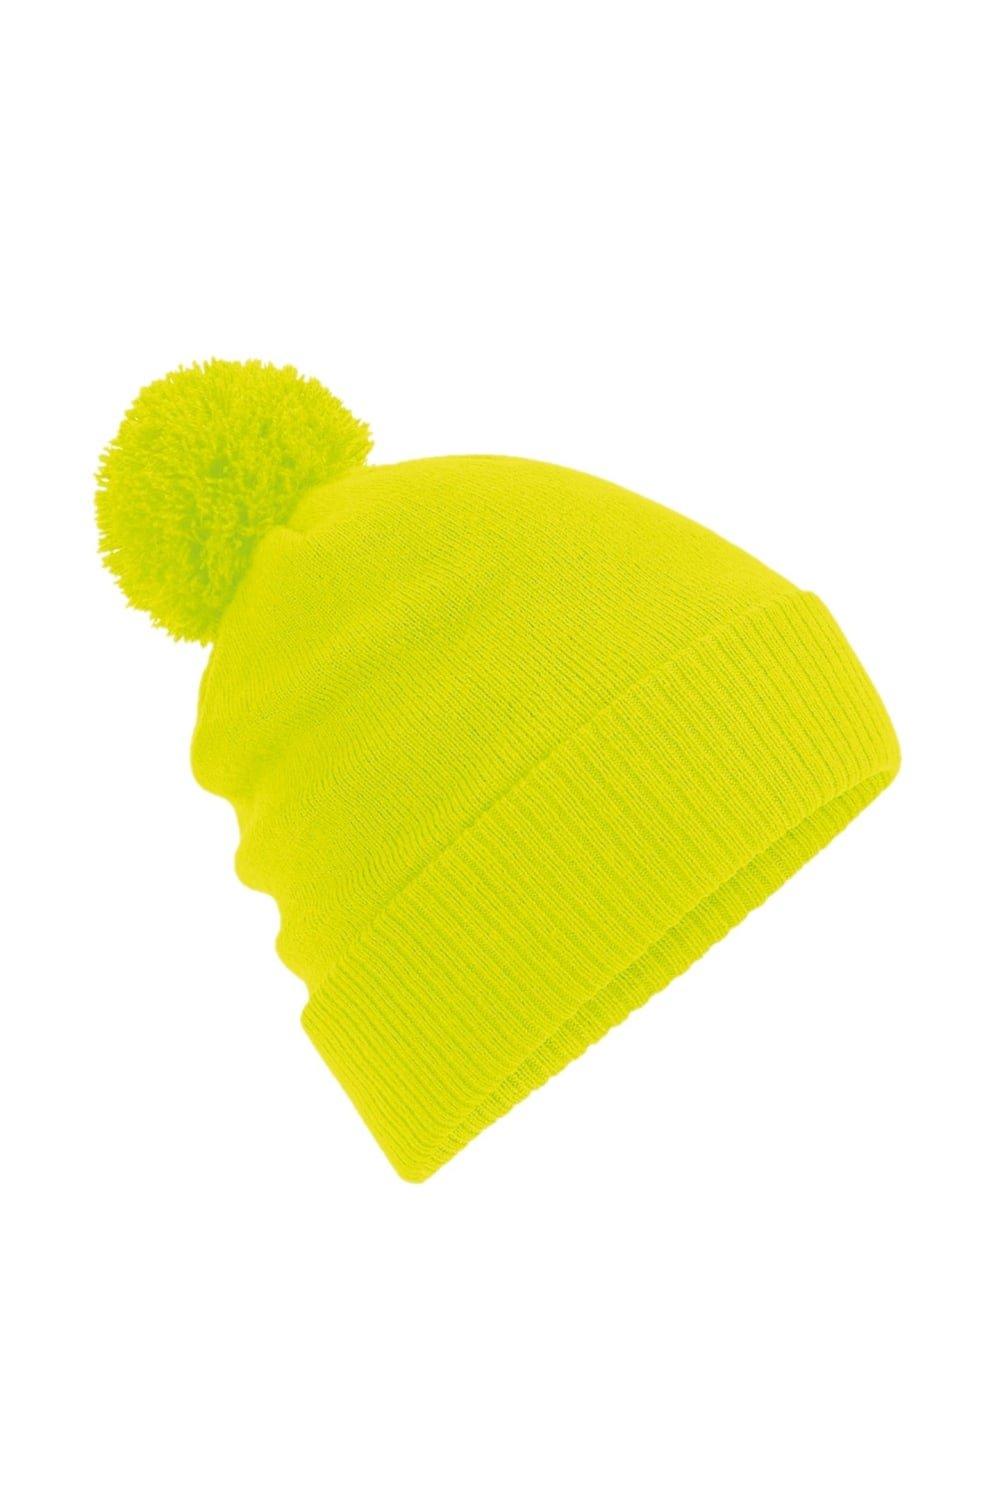 Тепловая шапка Snowstar Beechfield, желтый